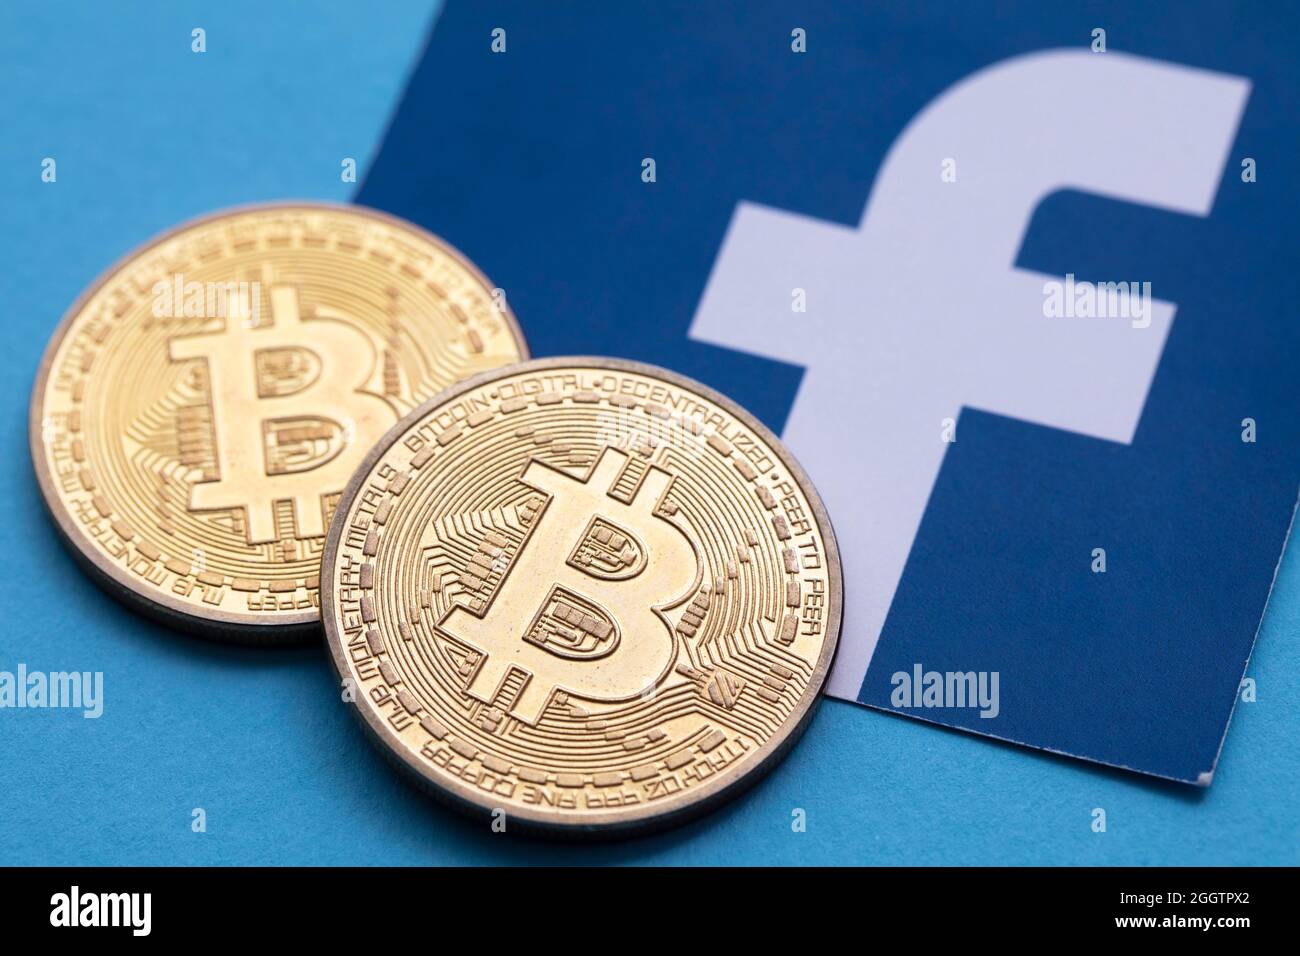 LONDON, Großbritannien - September 2021: Bitcoin-Kryptowährung auf einem facebook-Logo Stockfoto